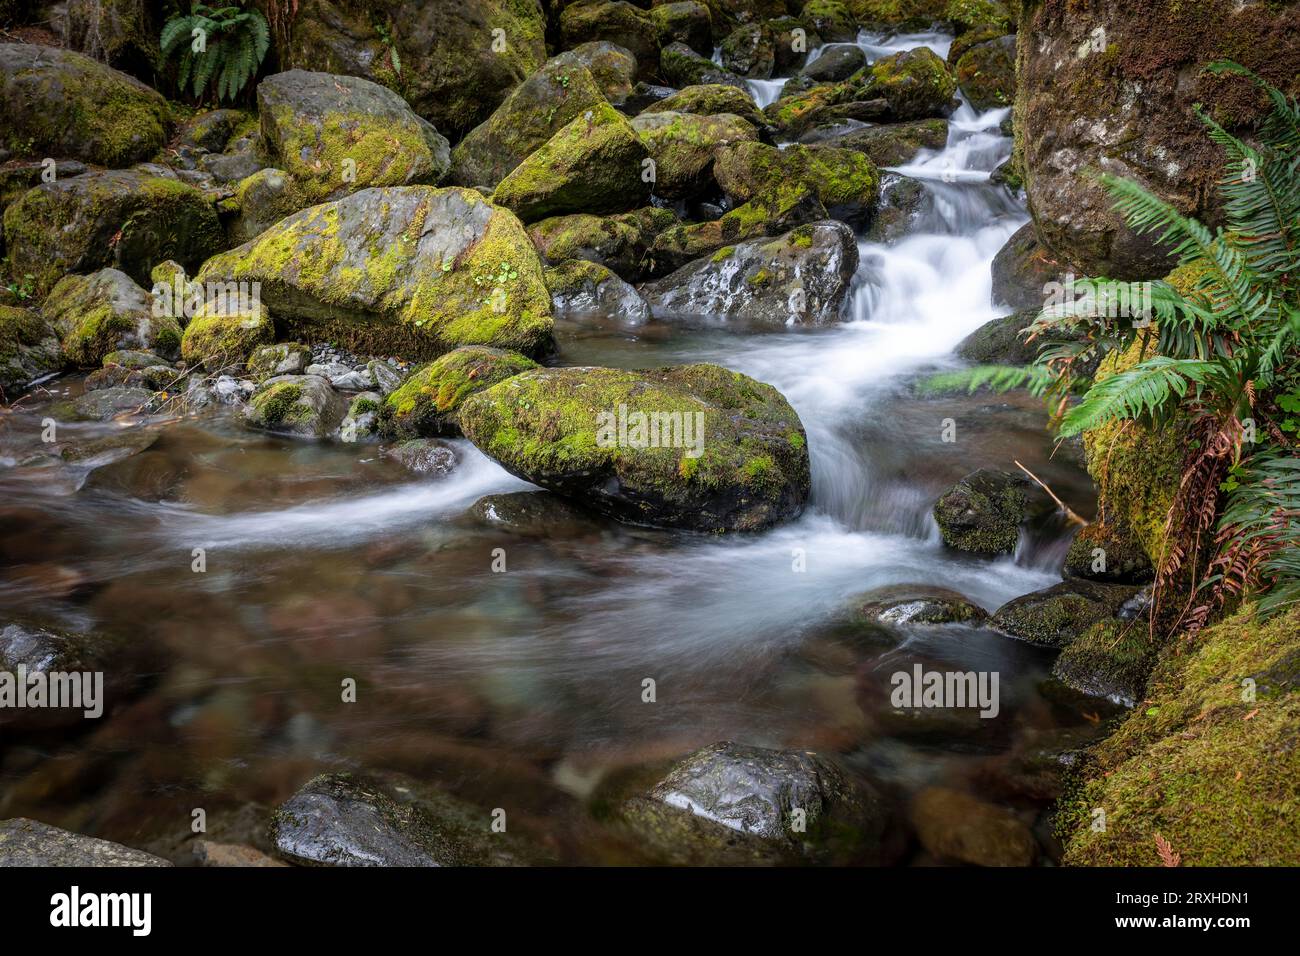 Lunga esposizione di acqua, rocce e muschio delle cascate Bunch nei pressi del lago Quinault nella Olympic National Forest Foto Stock